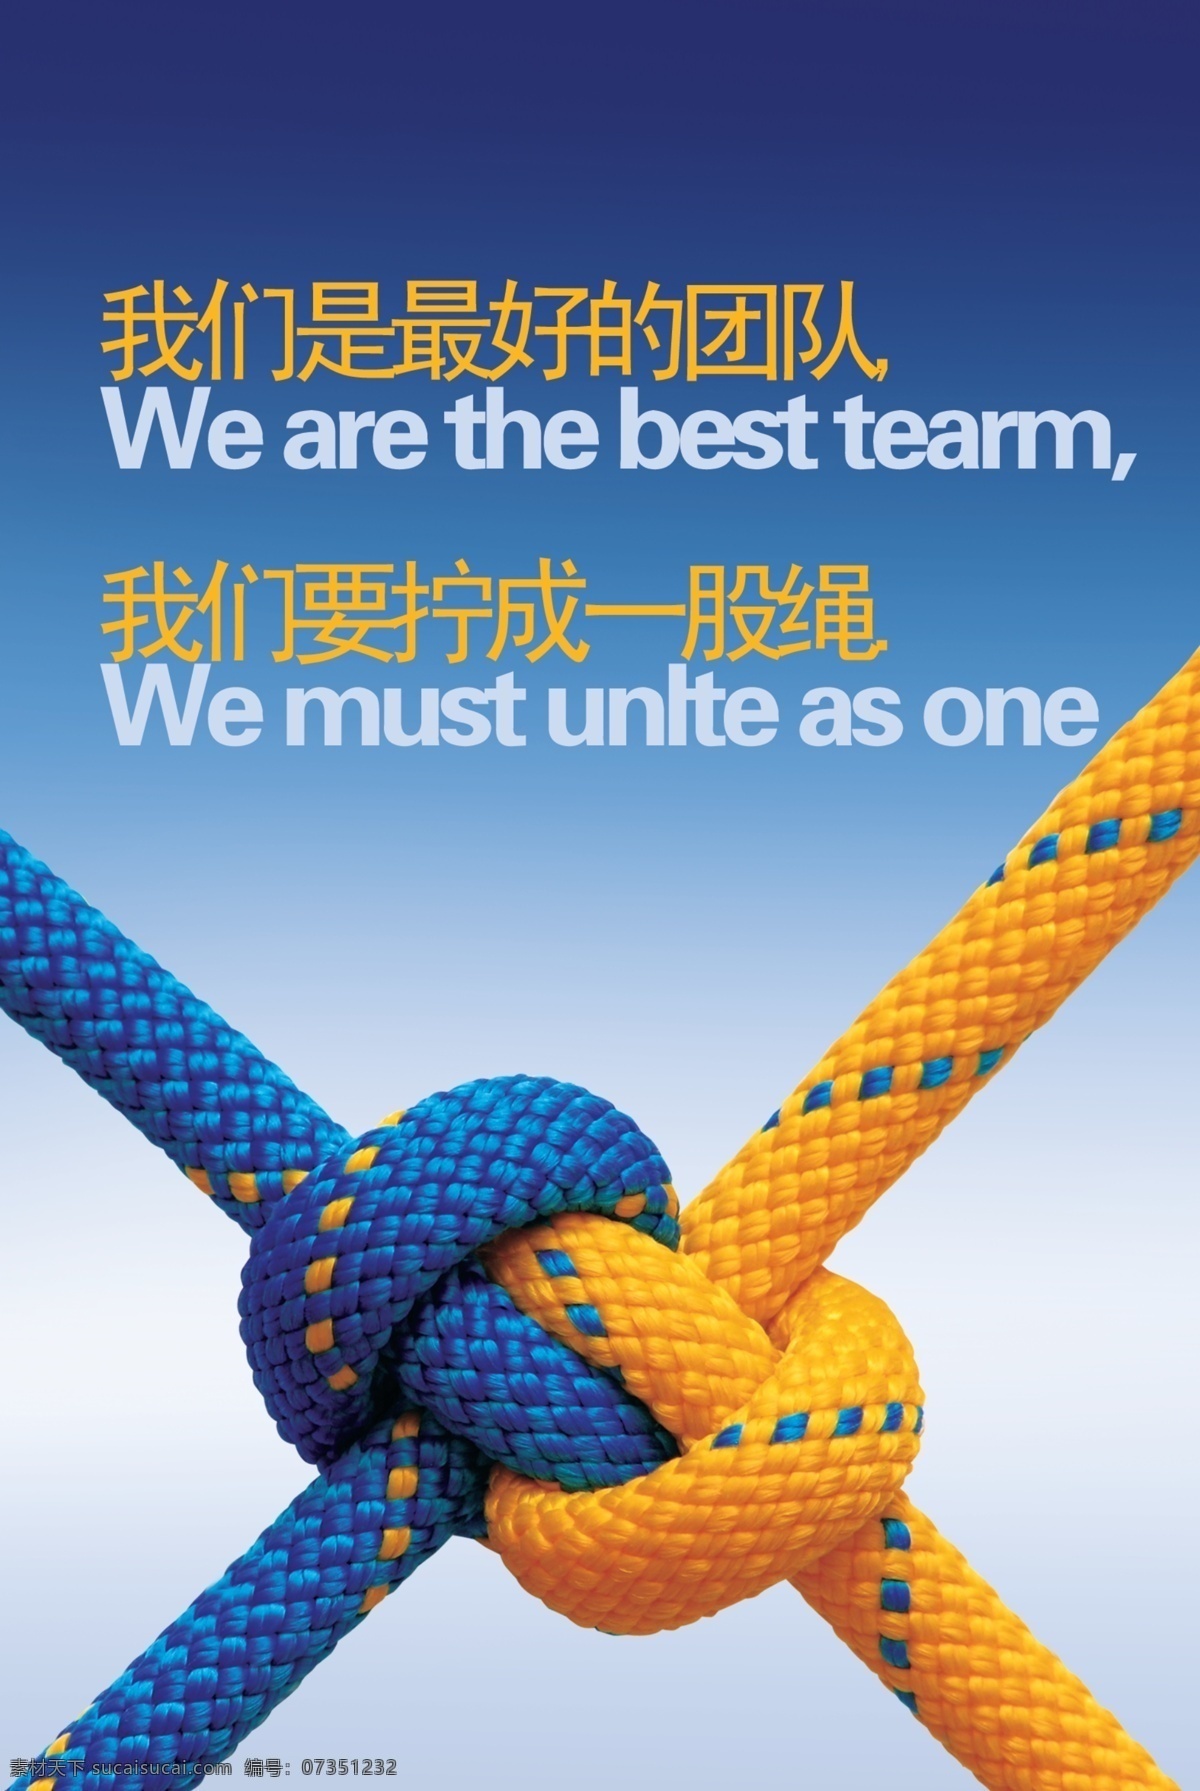 团队团结 最好的团队 拧成一股绳 蓝色底 黄蓝绳子 绳子结 团队展板 团结就是力量 展板模板